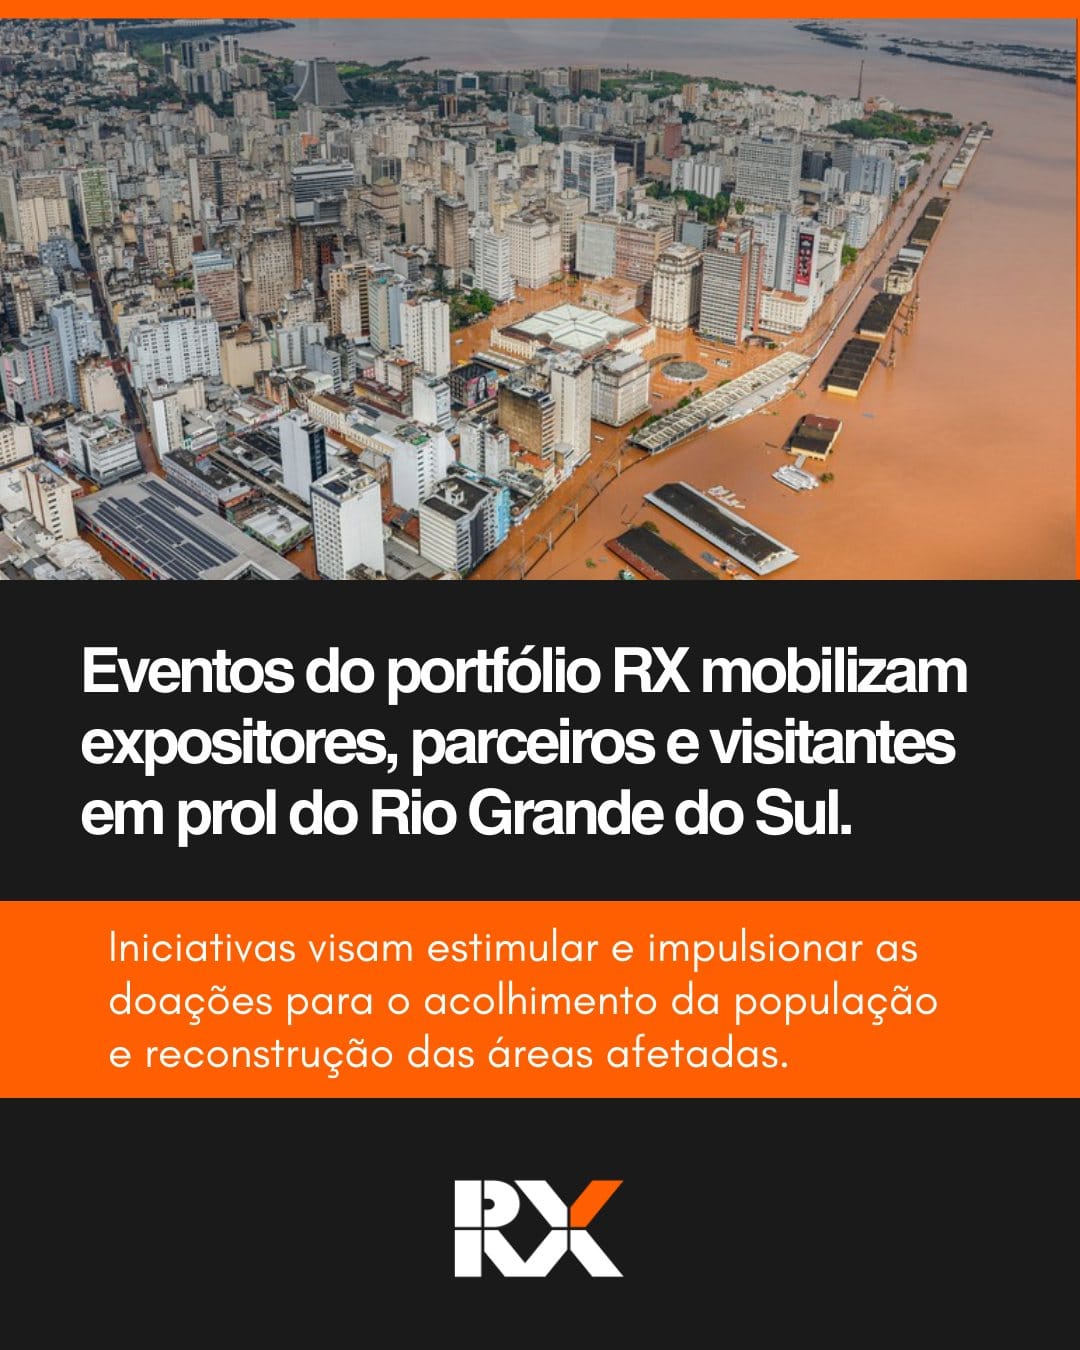 RX Brasil promove ações solidárias para vítimas das enchentes no Rio Grande do Sul